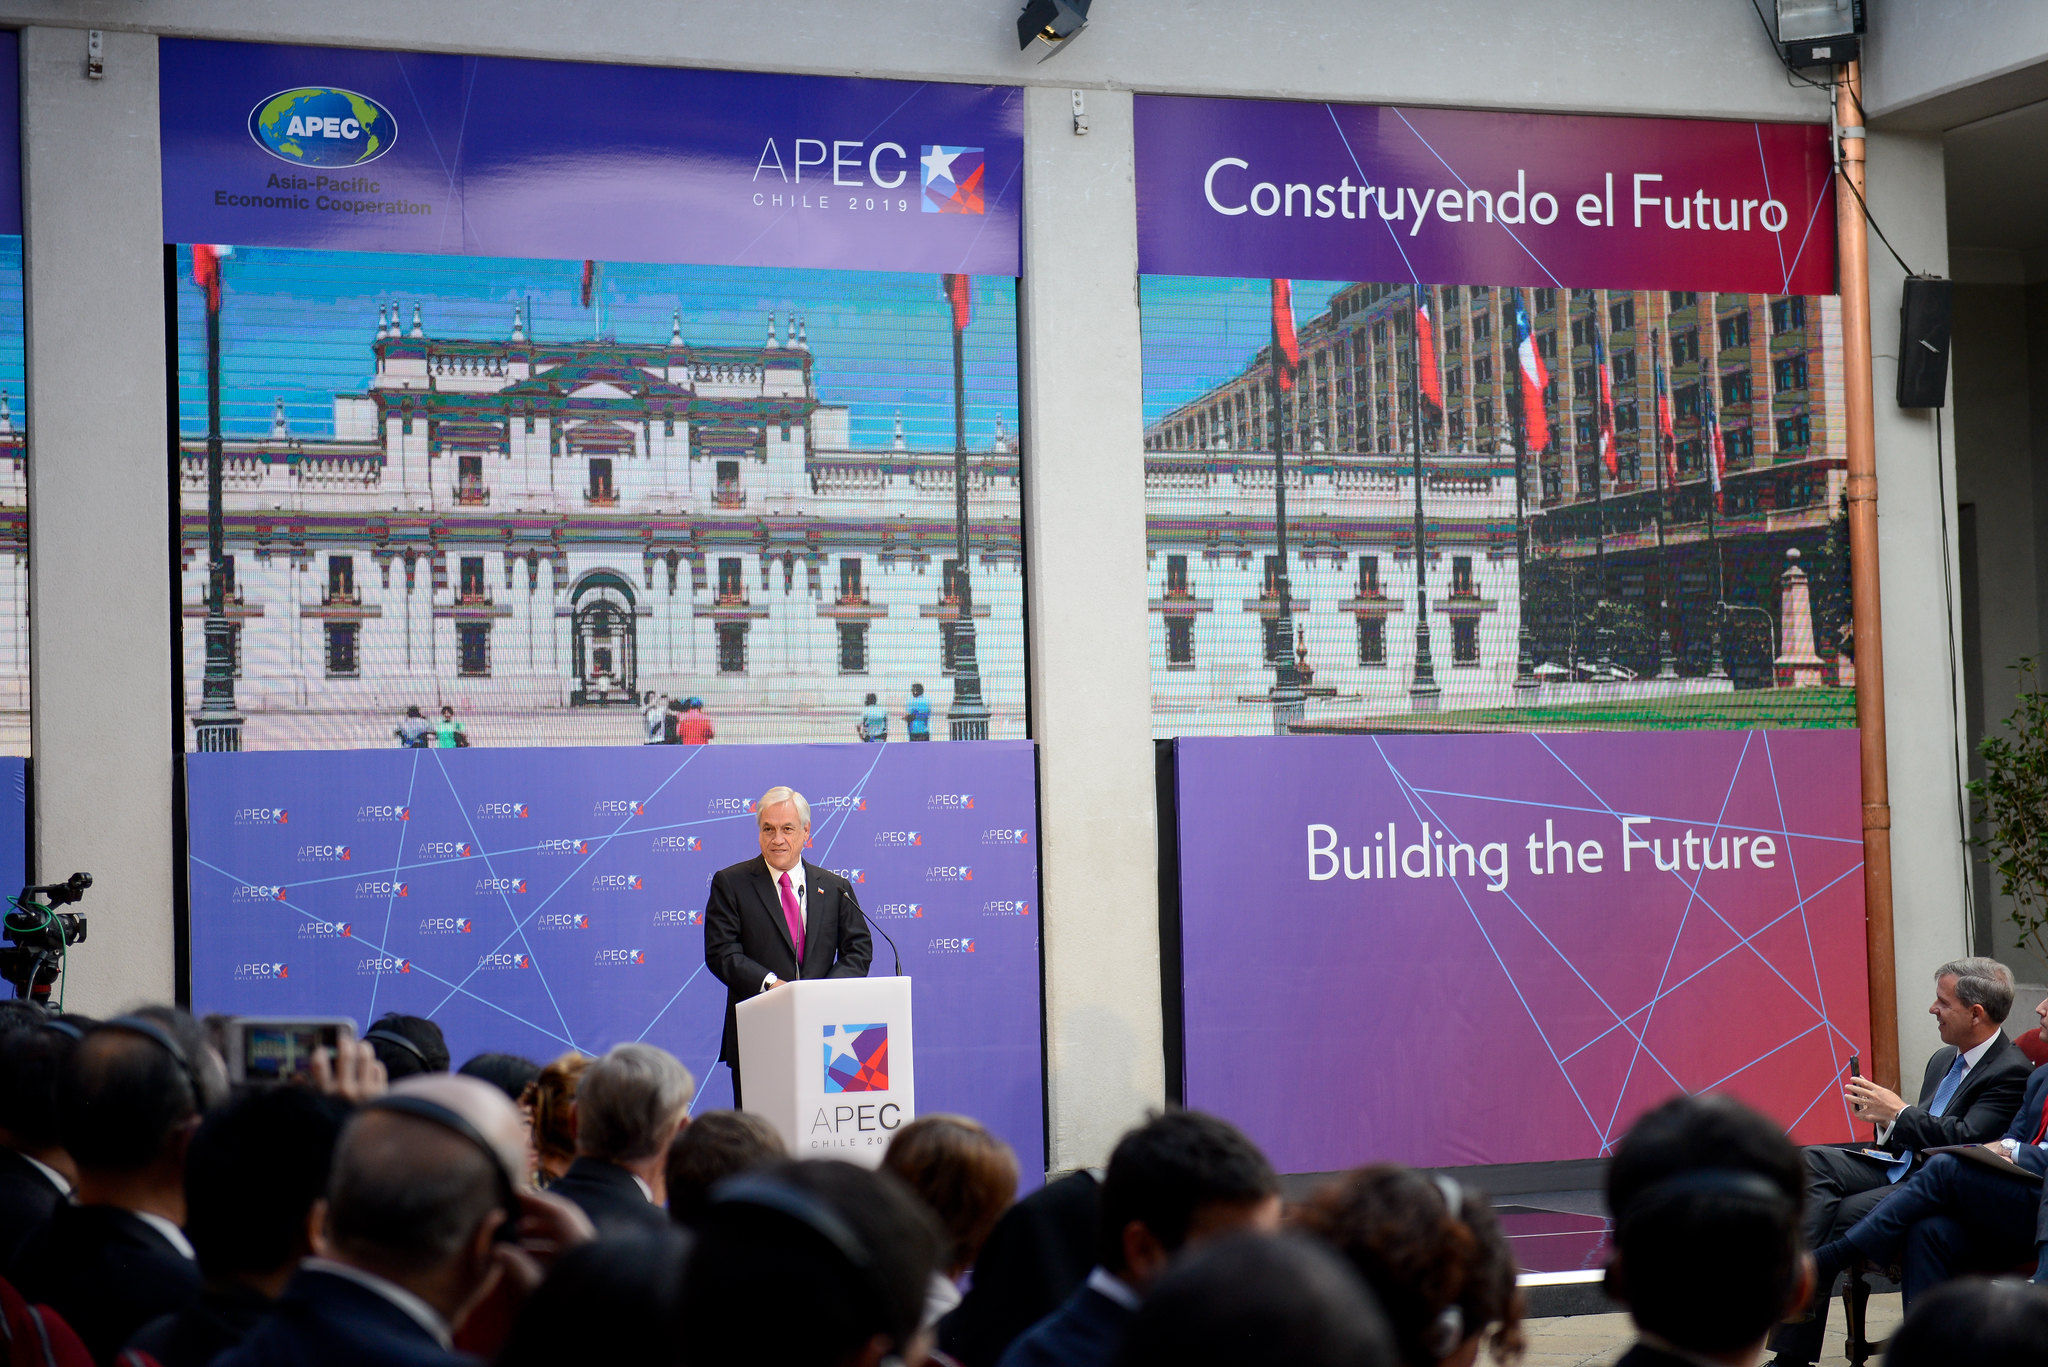 <p>President Sebastián Piñera at the launch event for the 2019 APEC Summit, to be held in Santiago, Chile (image: <a href="https://www.flickr.com/photos/secretaria_general_de_gobierno/46236812592/">Ministerio Secretaría General del Gobierno</a>)</p>